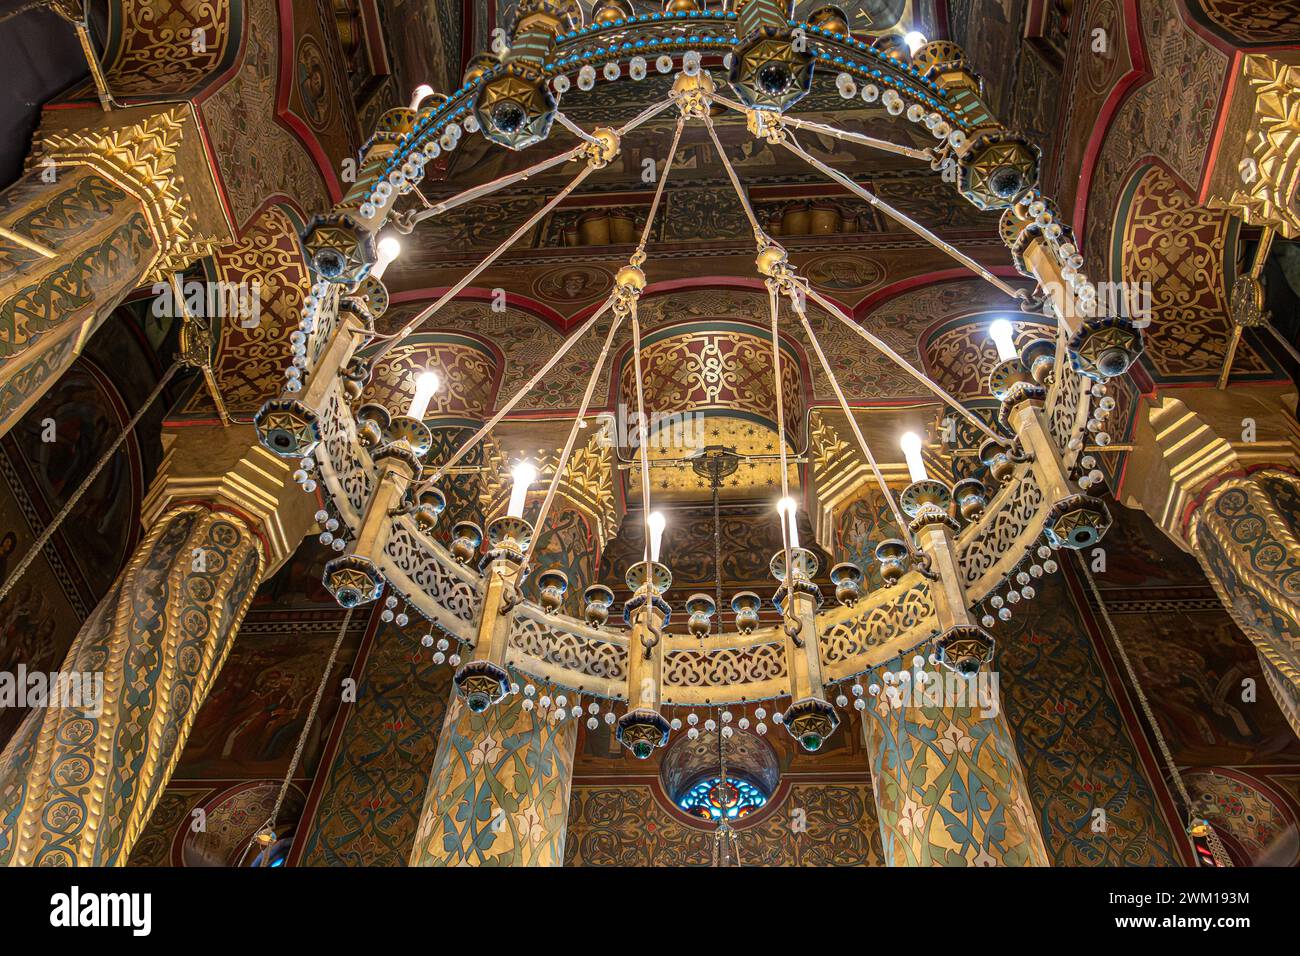 Curtea de Arges, Roumanie - 22 juillet 2020 : intérieur du monastère orthodoxe construit entre 1515-1517 par Neagoe Basarab et monument architectural célèbre Banque D'Images